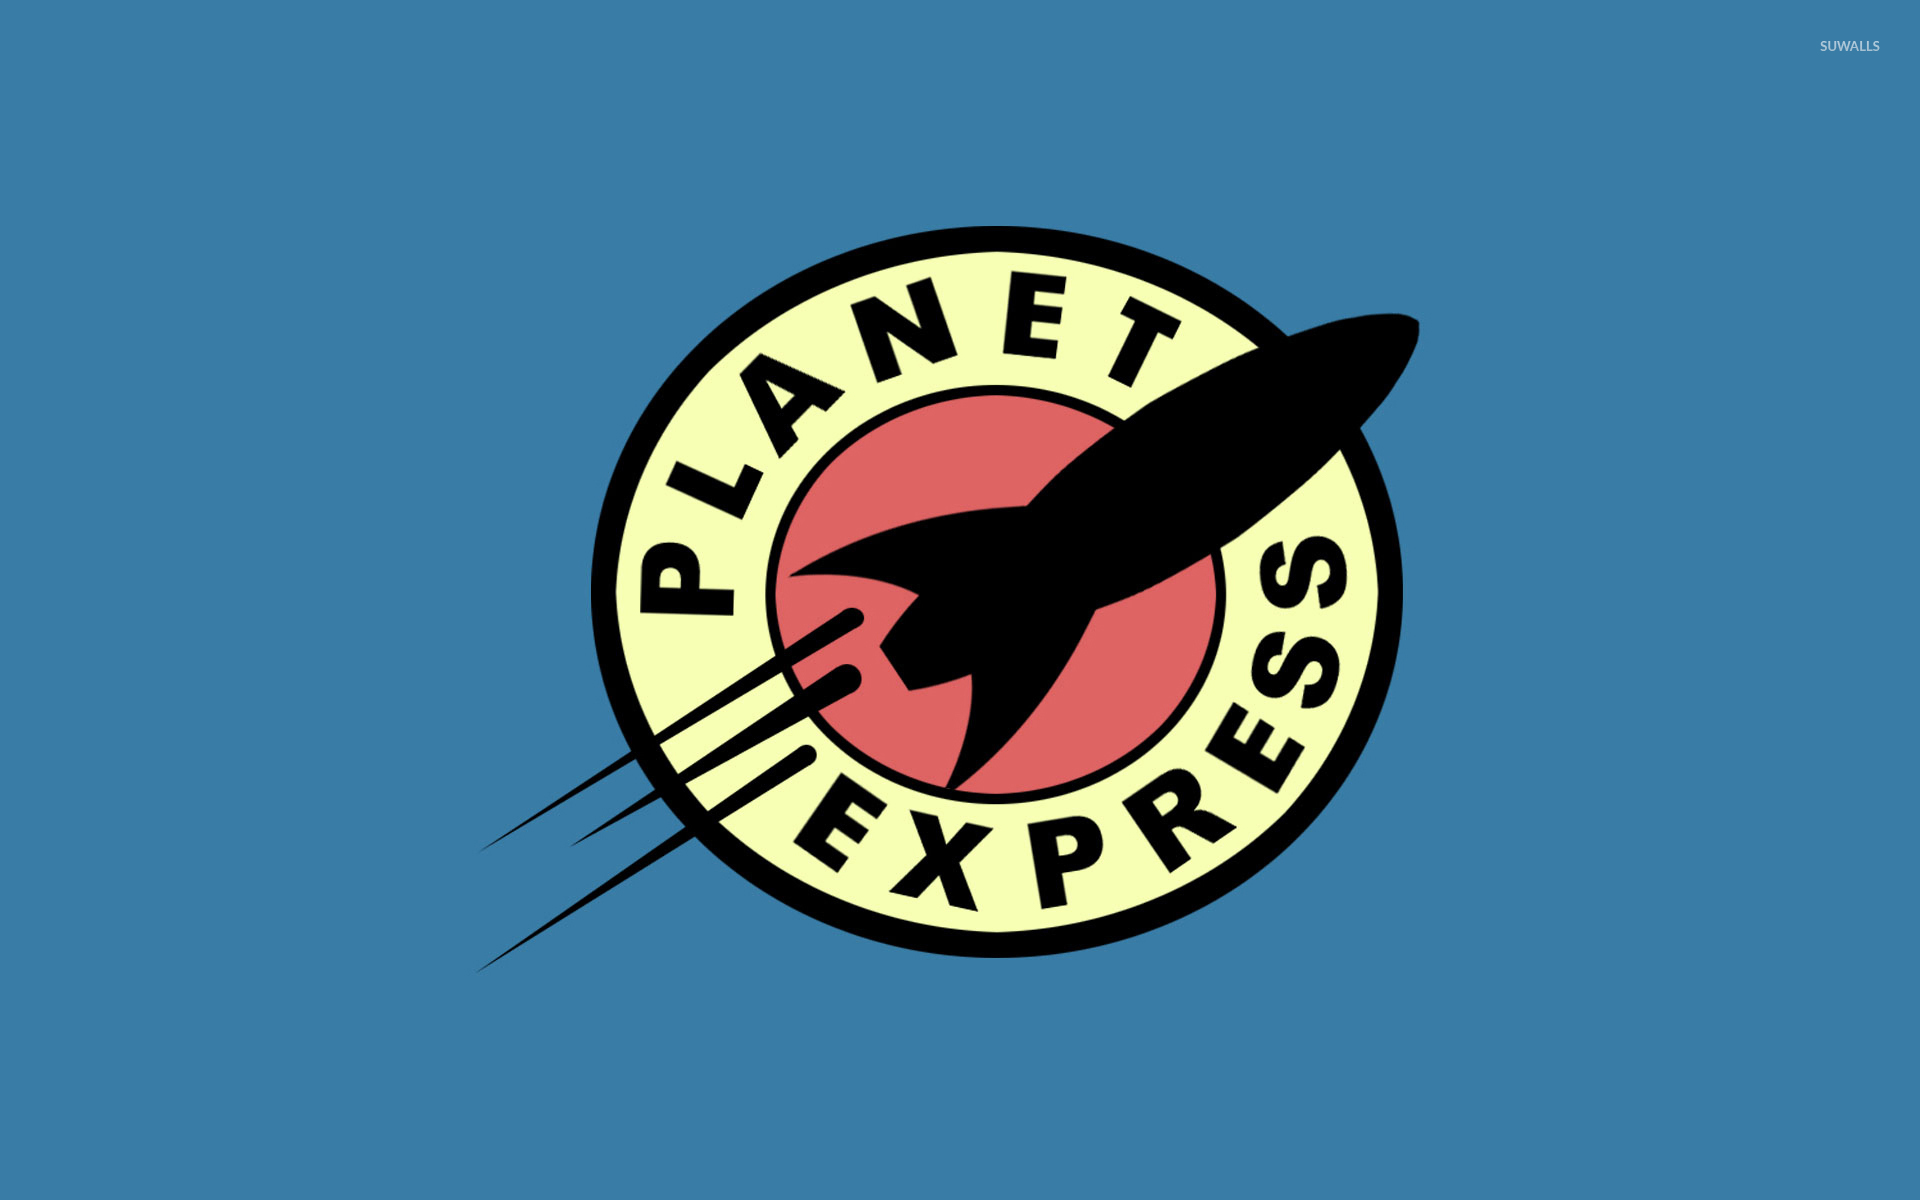 Planet Express wallpaper   Cartoon wallpapers   9179